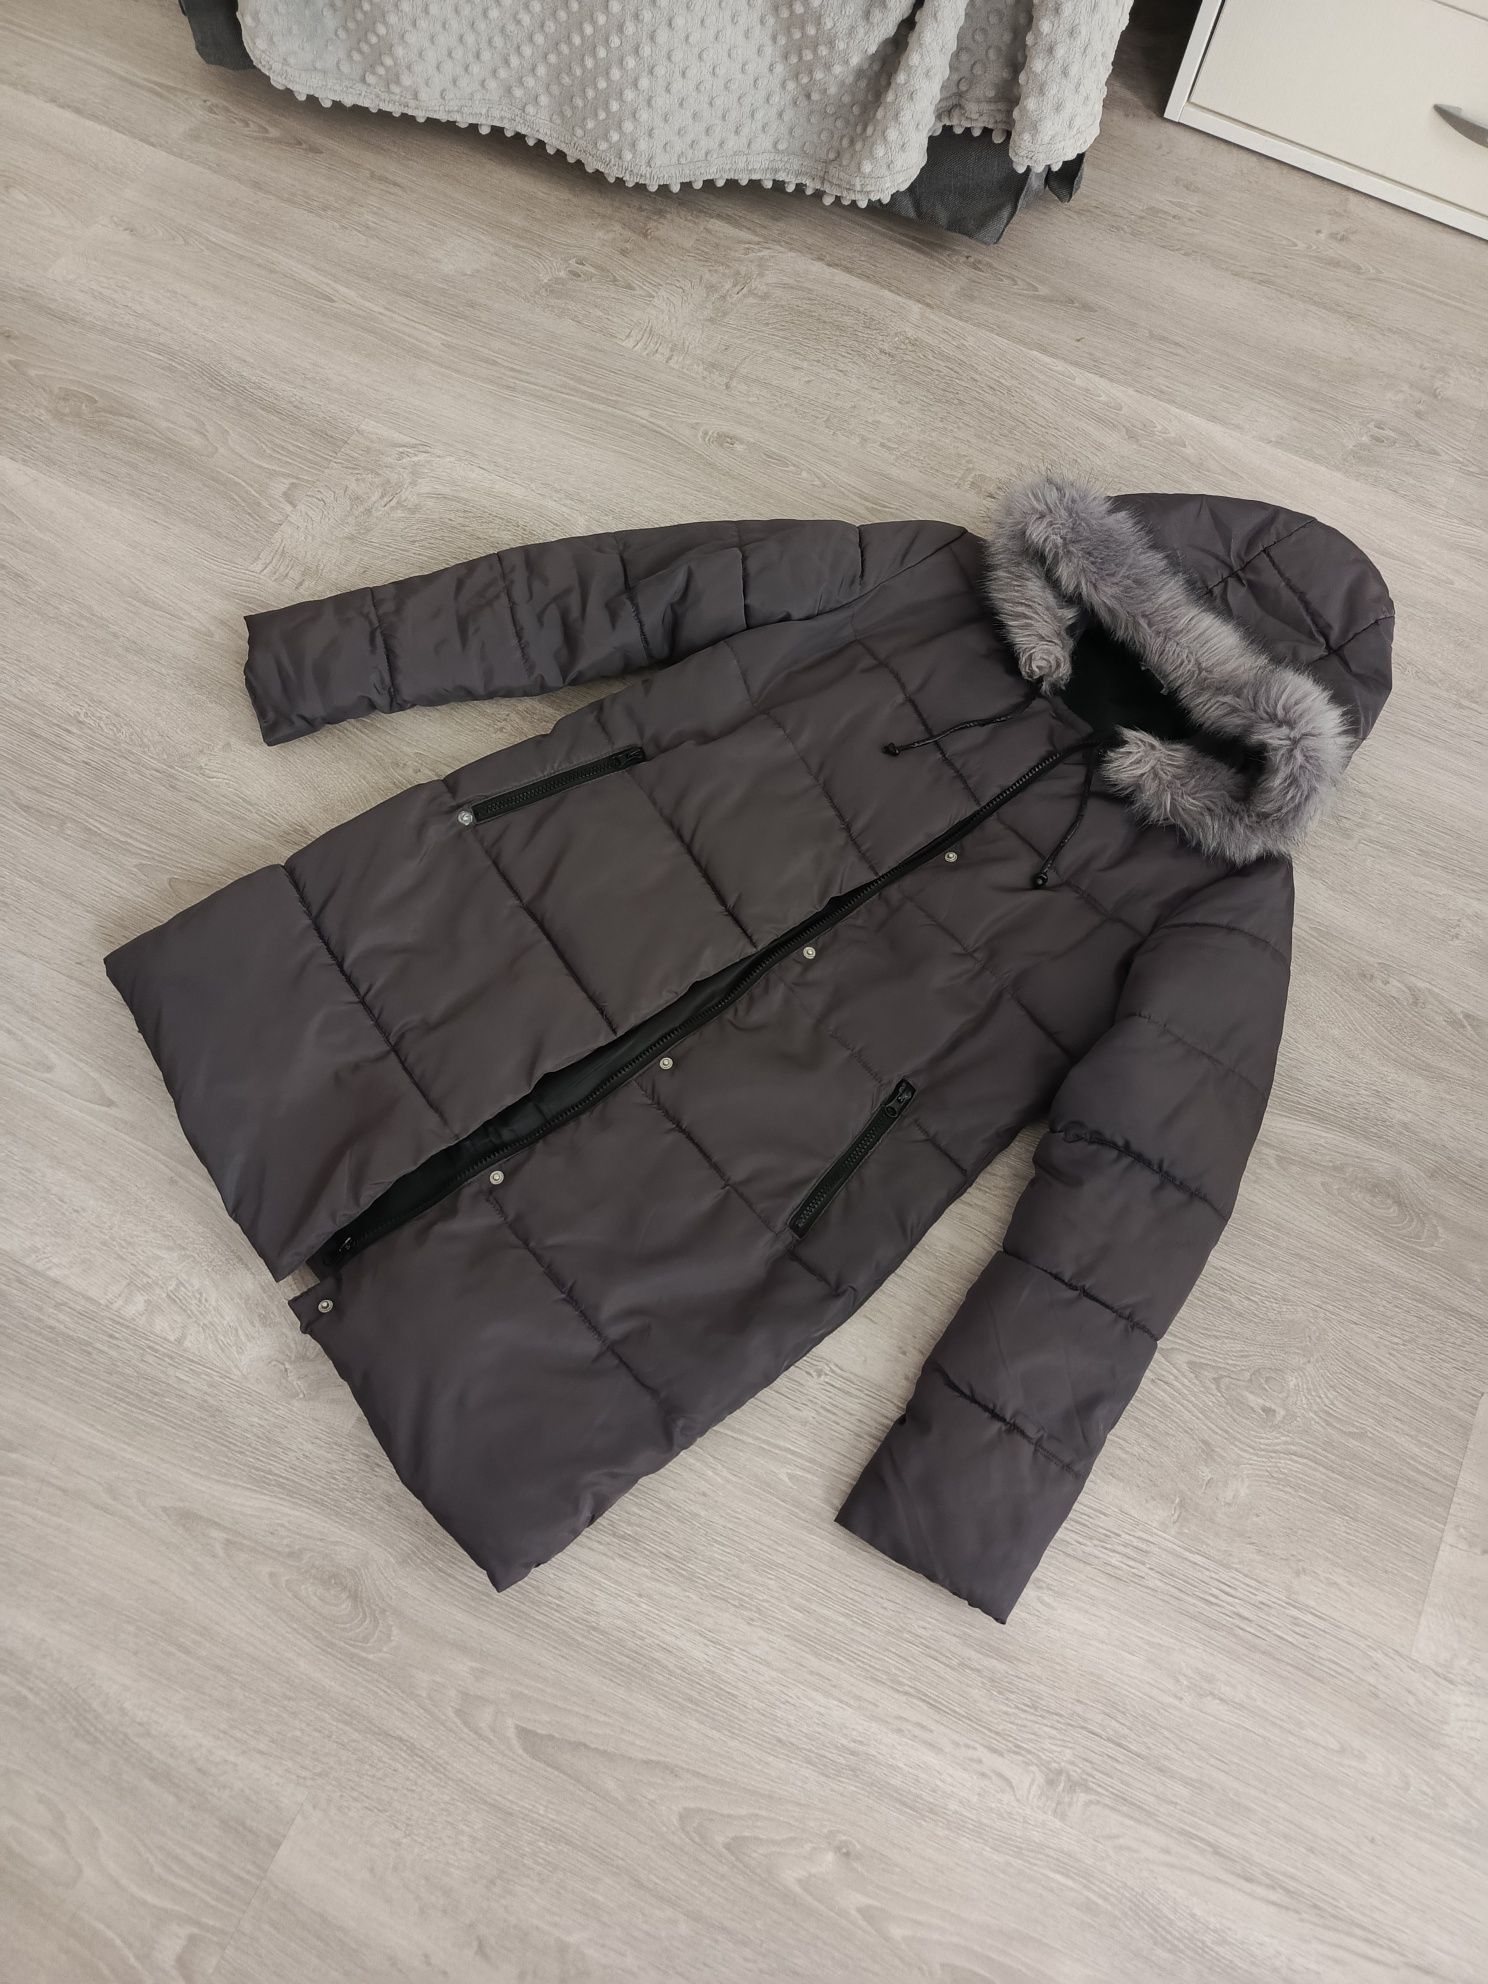 Szary puchowy zimowy płaszcz płaszczyk z kapturem parka H&M 36 S